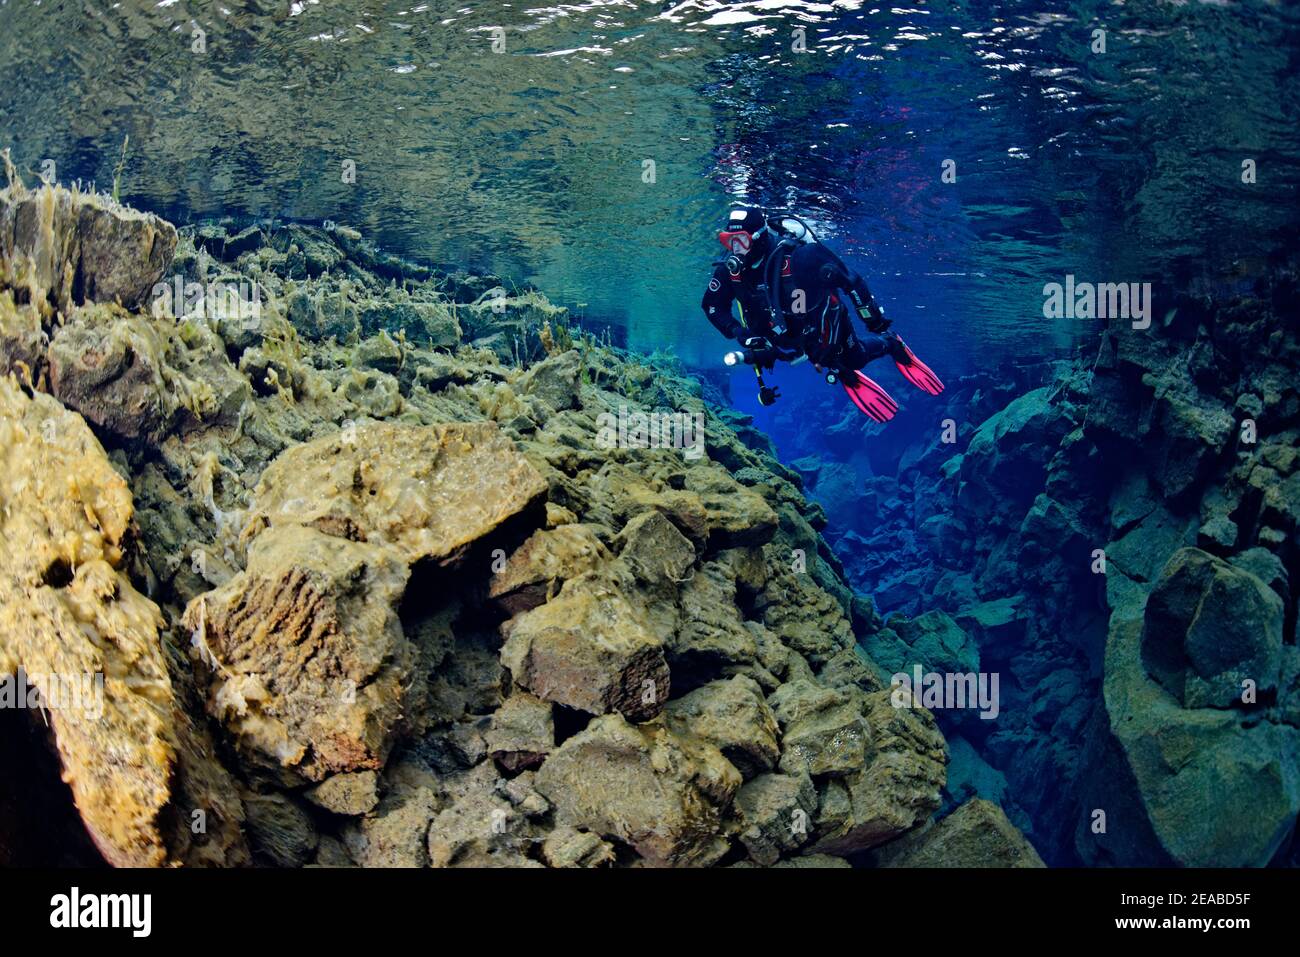 Silfra fissure, plongeur dans la fissure continentale Silfra, plongée entre les continents, Parc national de Thingvellir, Islande Silfra est une fissure, faisant partie de la frontière tectonique divergente entre les plaques nord-américaines et eurasiennes Banque D'Images